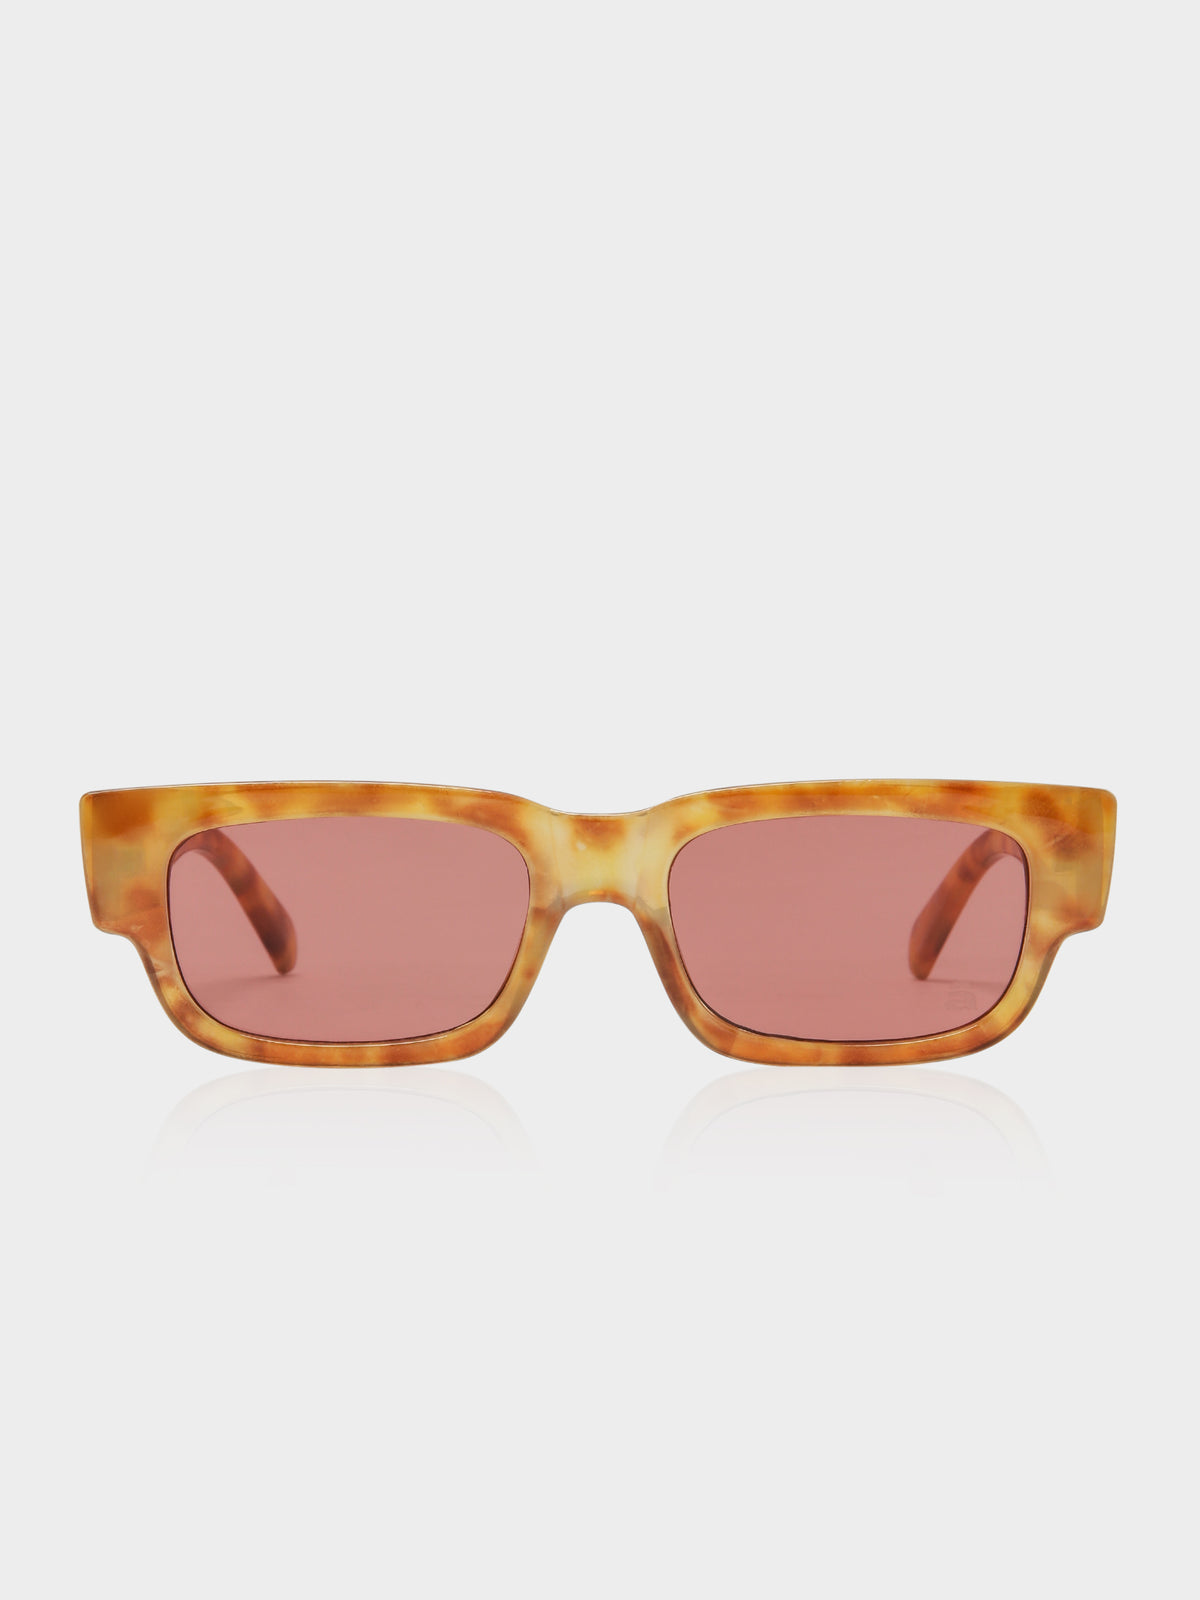 Porter Sunglasses in Sun Drip